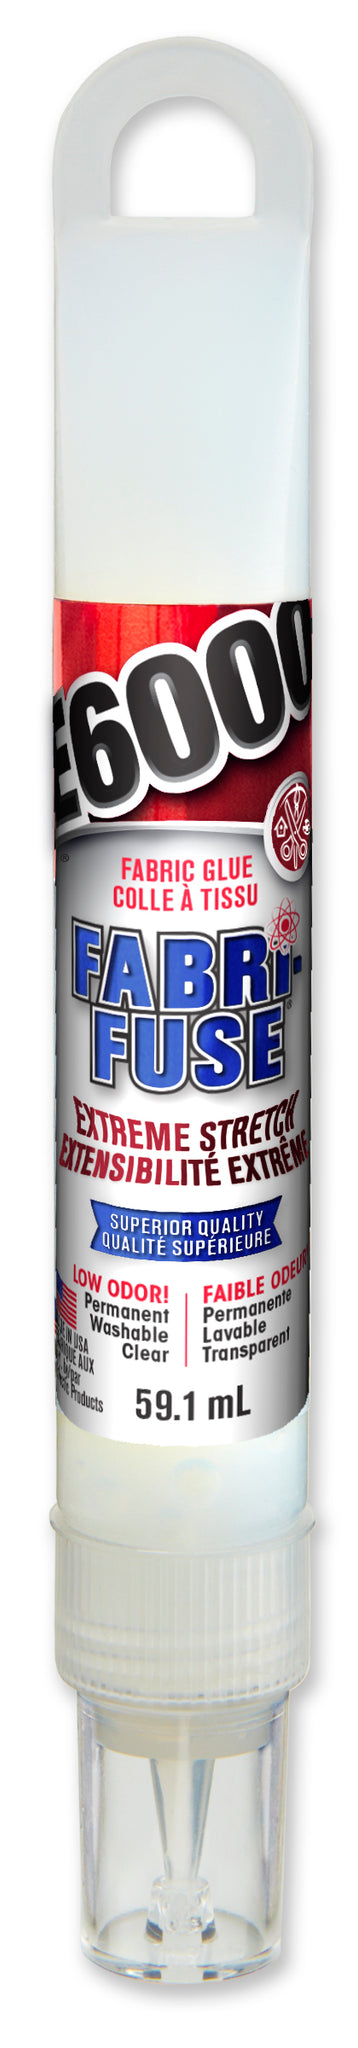 E6000 Fabri-Fuse Large 4oz